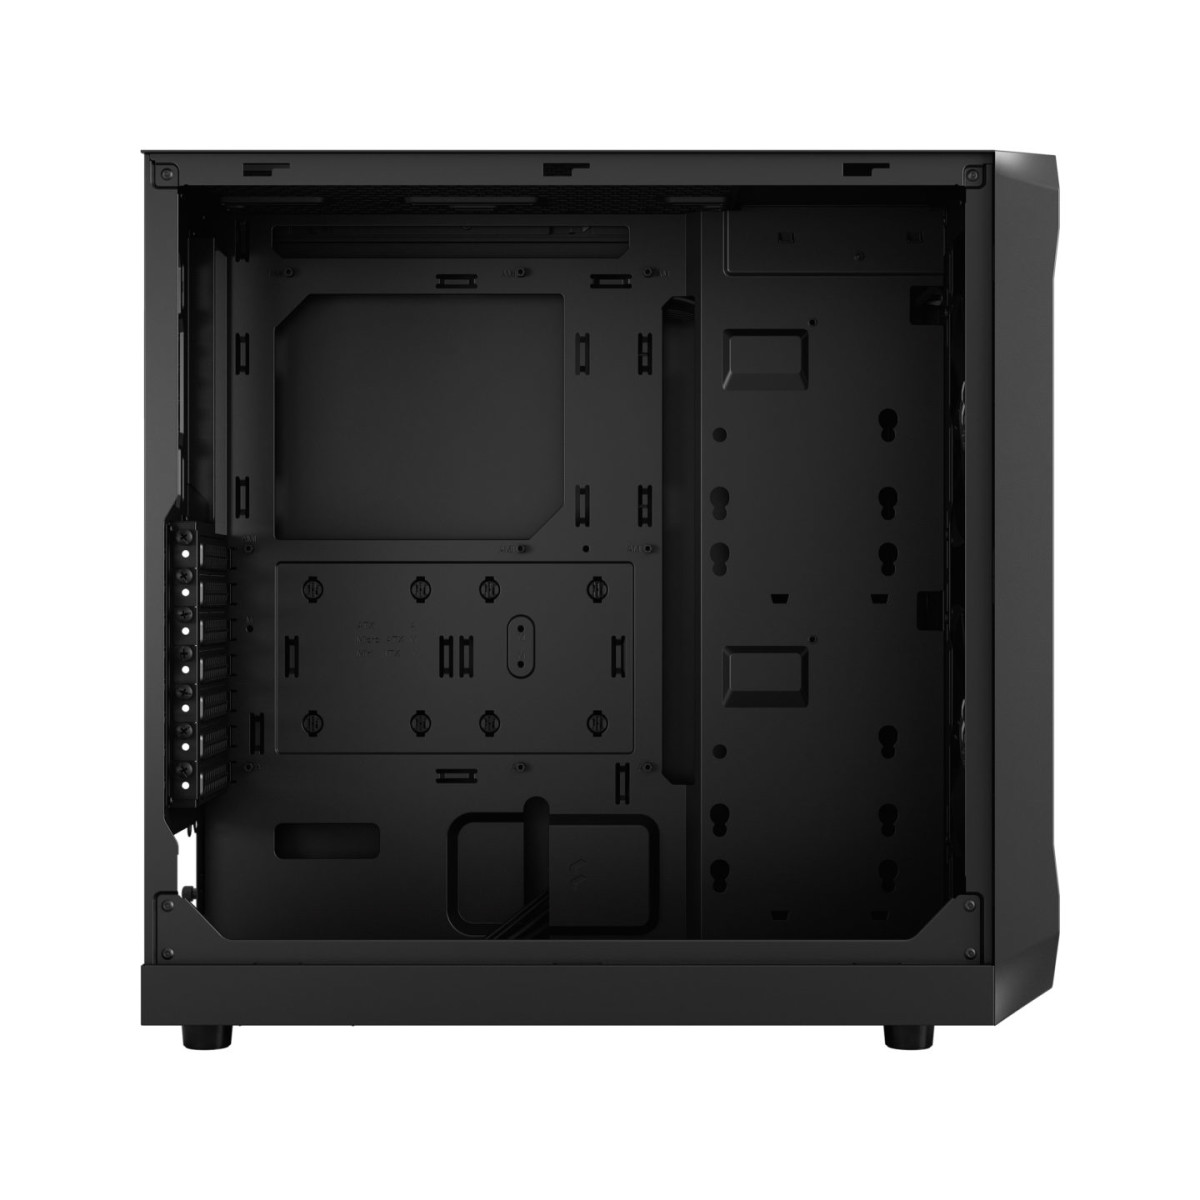 CASE ATX Focus 2 Black Solid